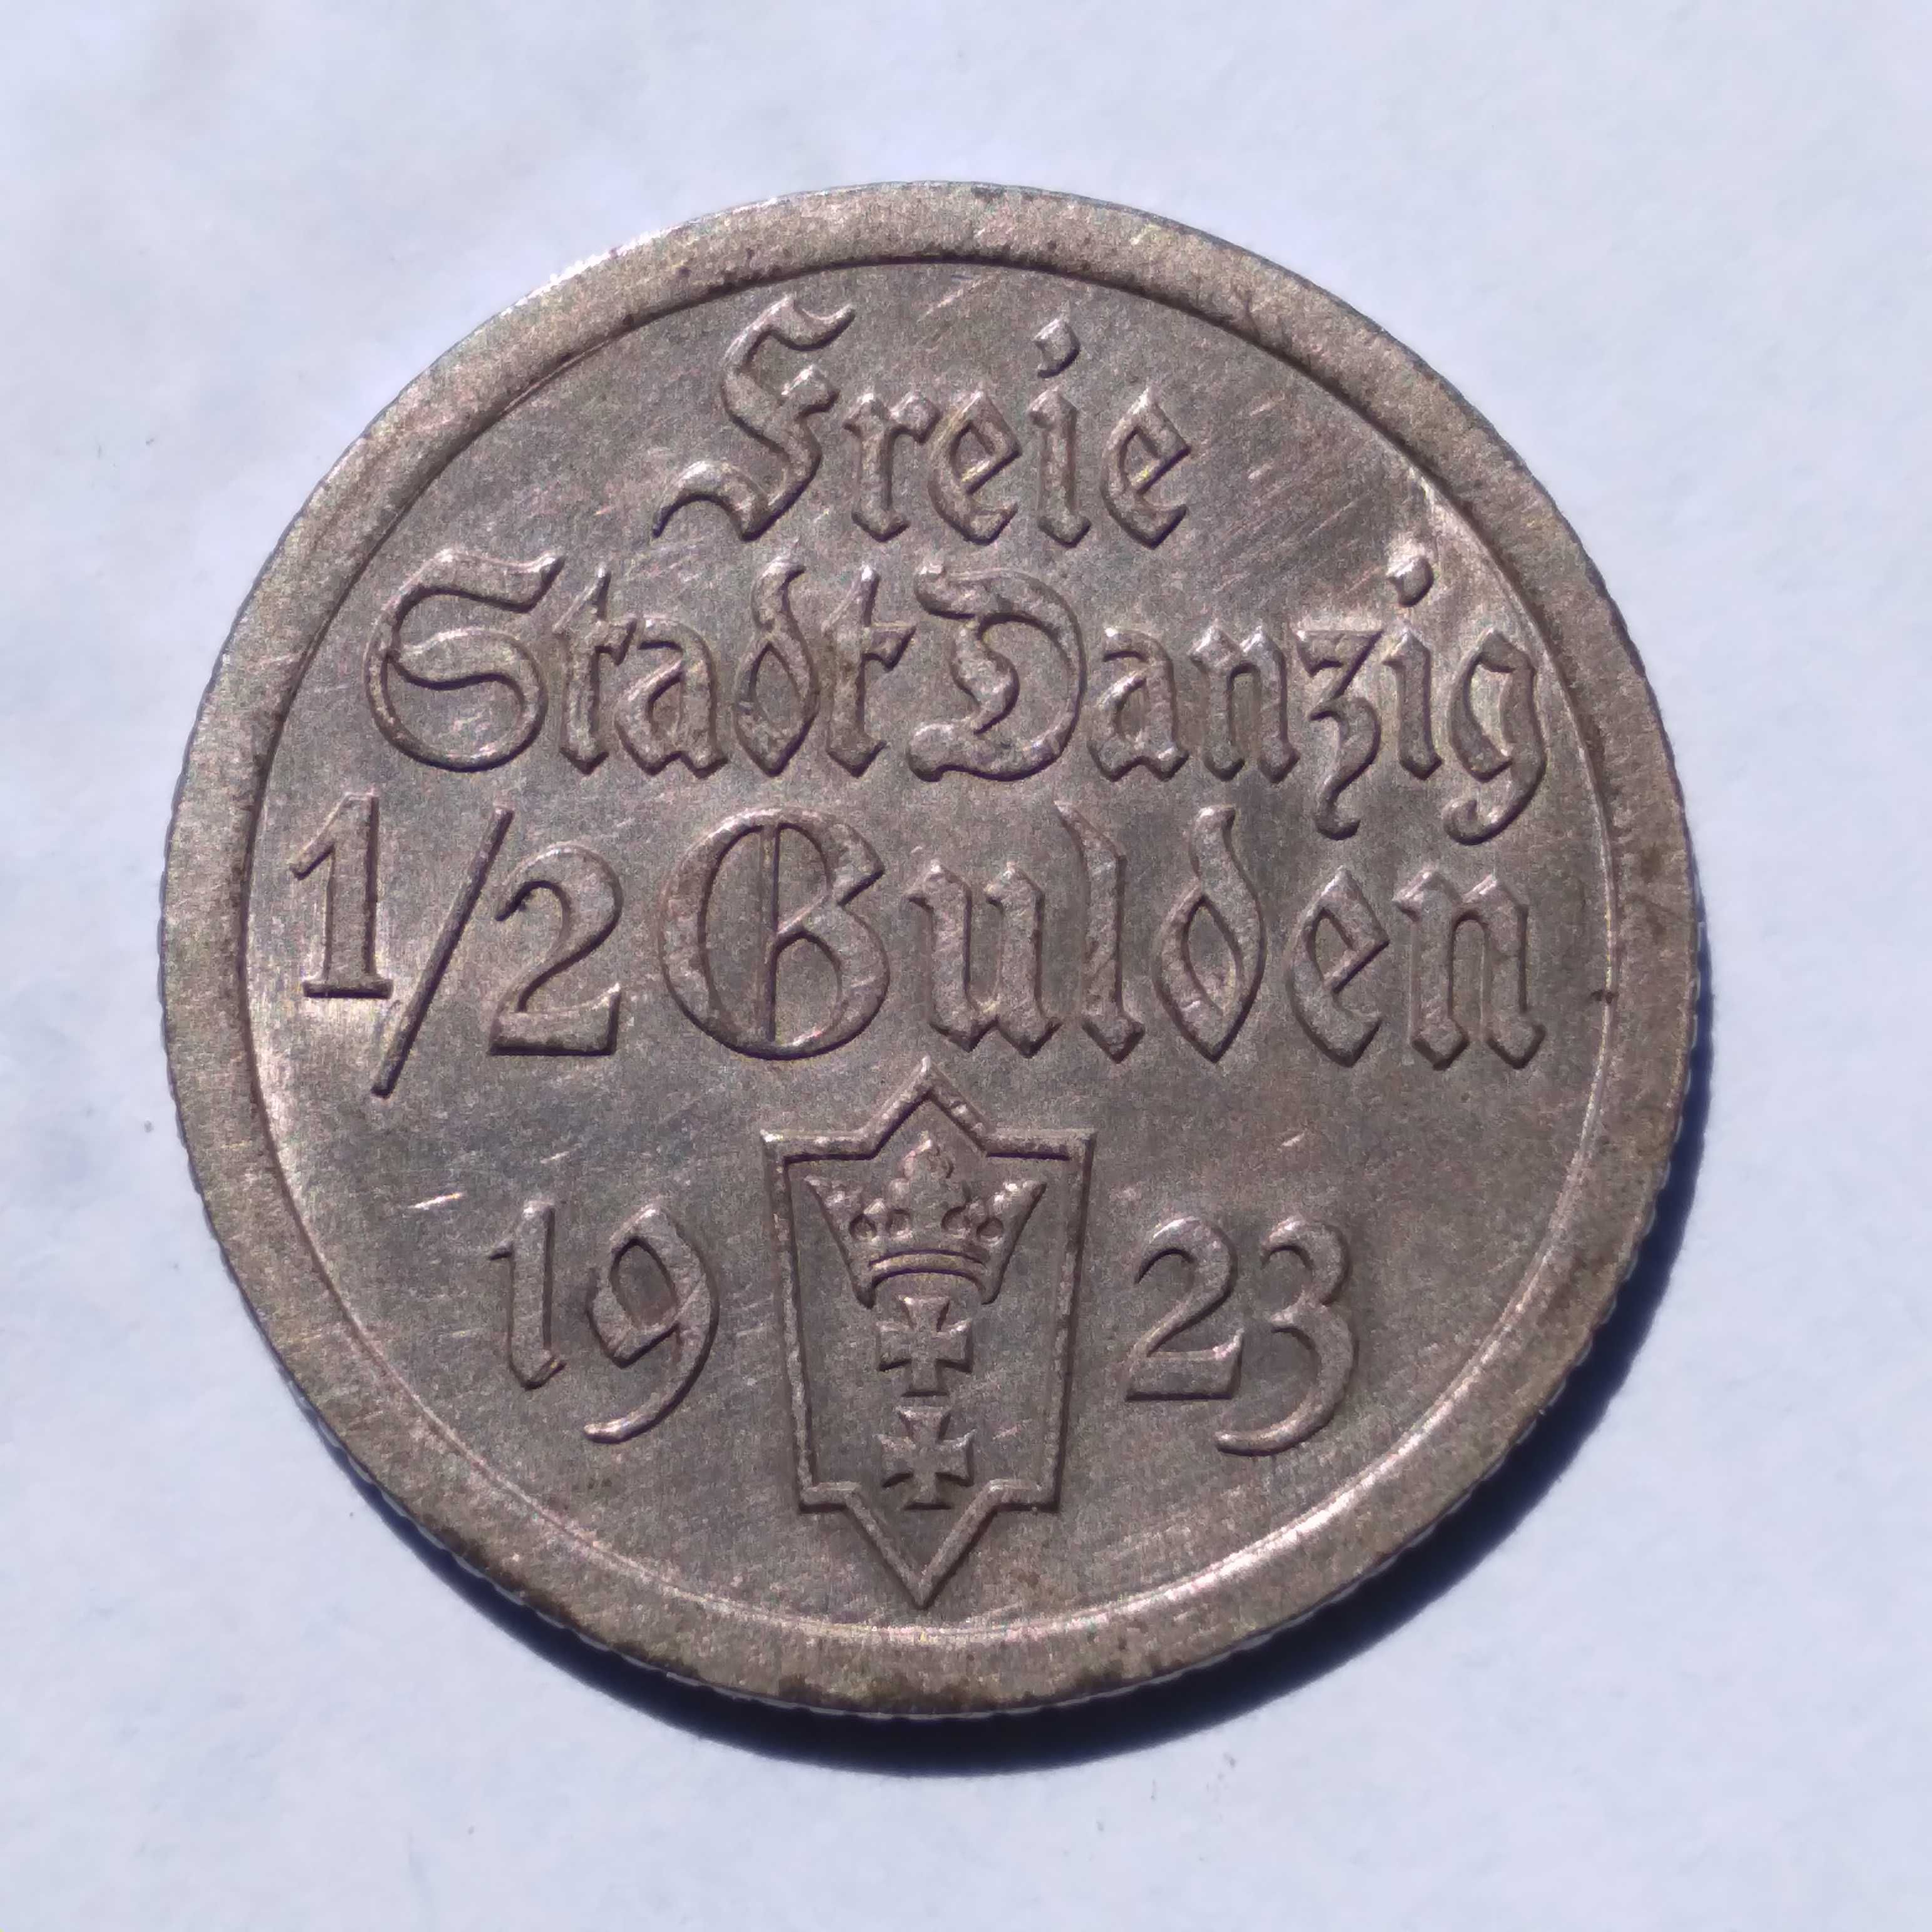 1/2 guldena 1923 WMG (11)